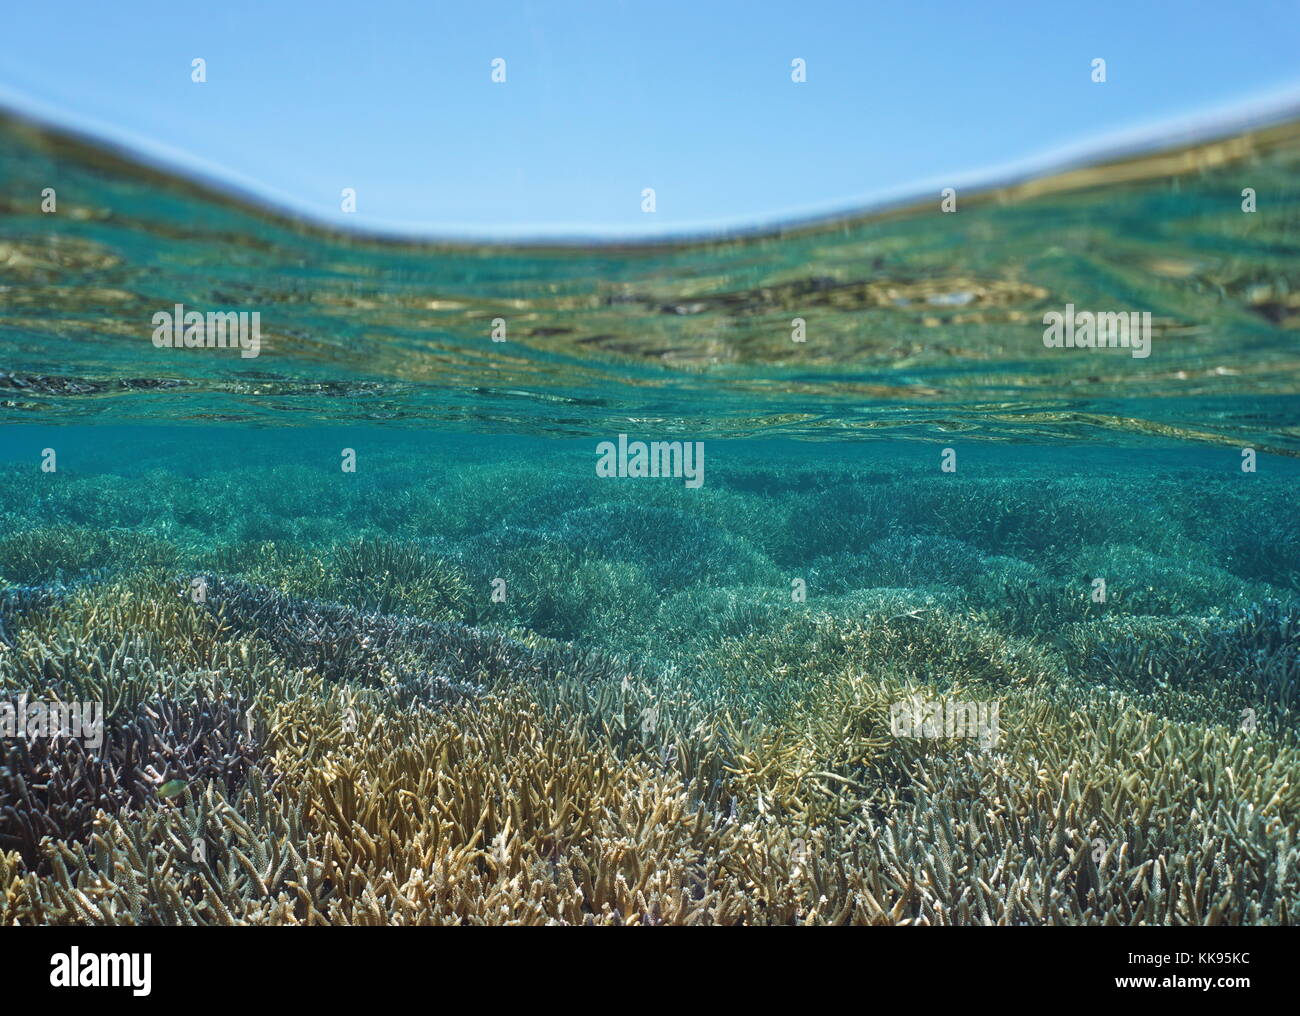 Des fonds marins peu profonds couverts par les coraux Acropora staghorn en bonne santé sous l'eau et ciel bleu au-dessus de la surface de l'eau, Nouvelle Calédonie, océan Pacifique sud Banque D'Images